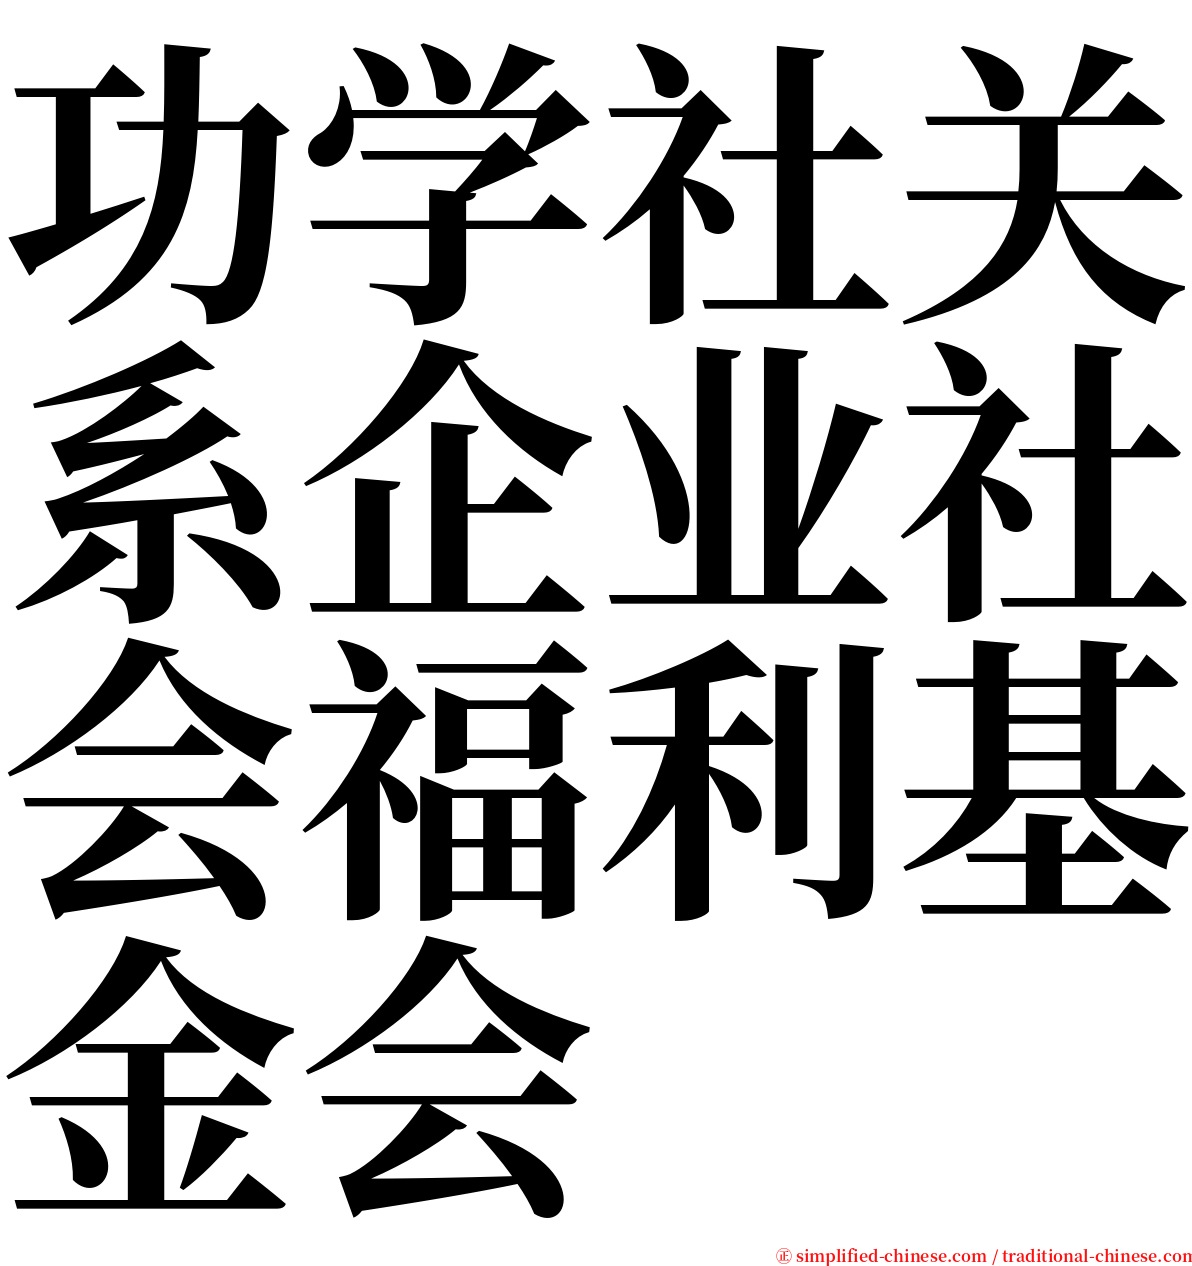 功学社关系企业社会福利基金会 serif font